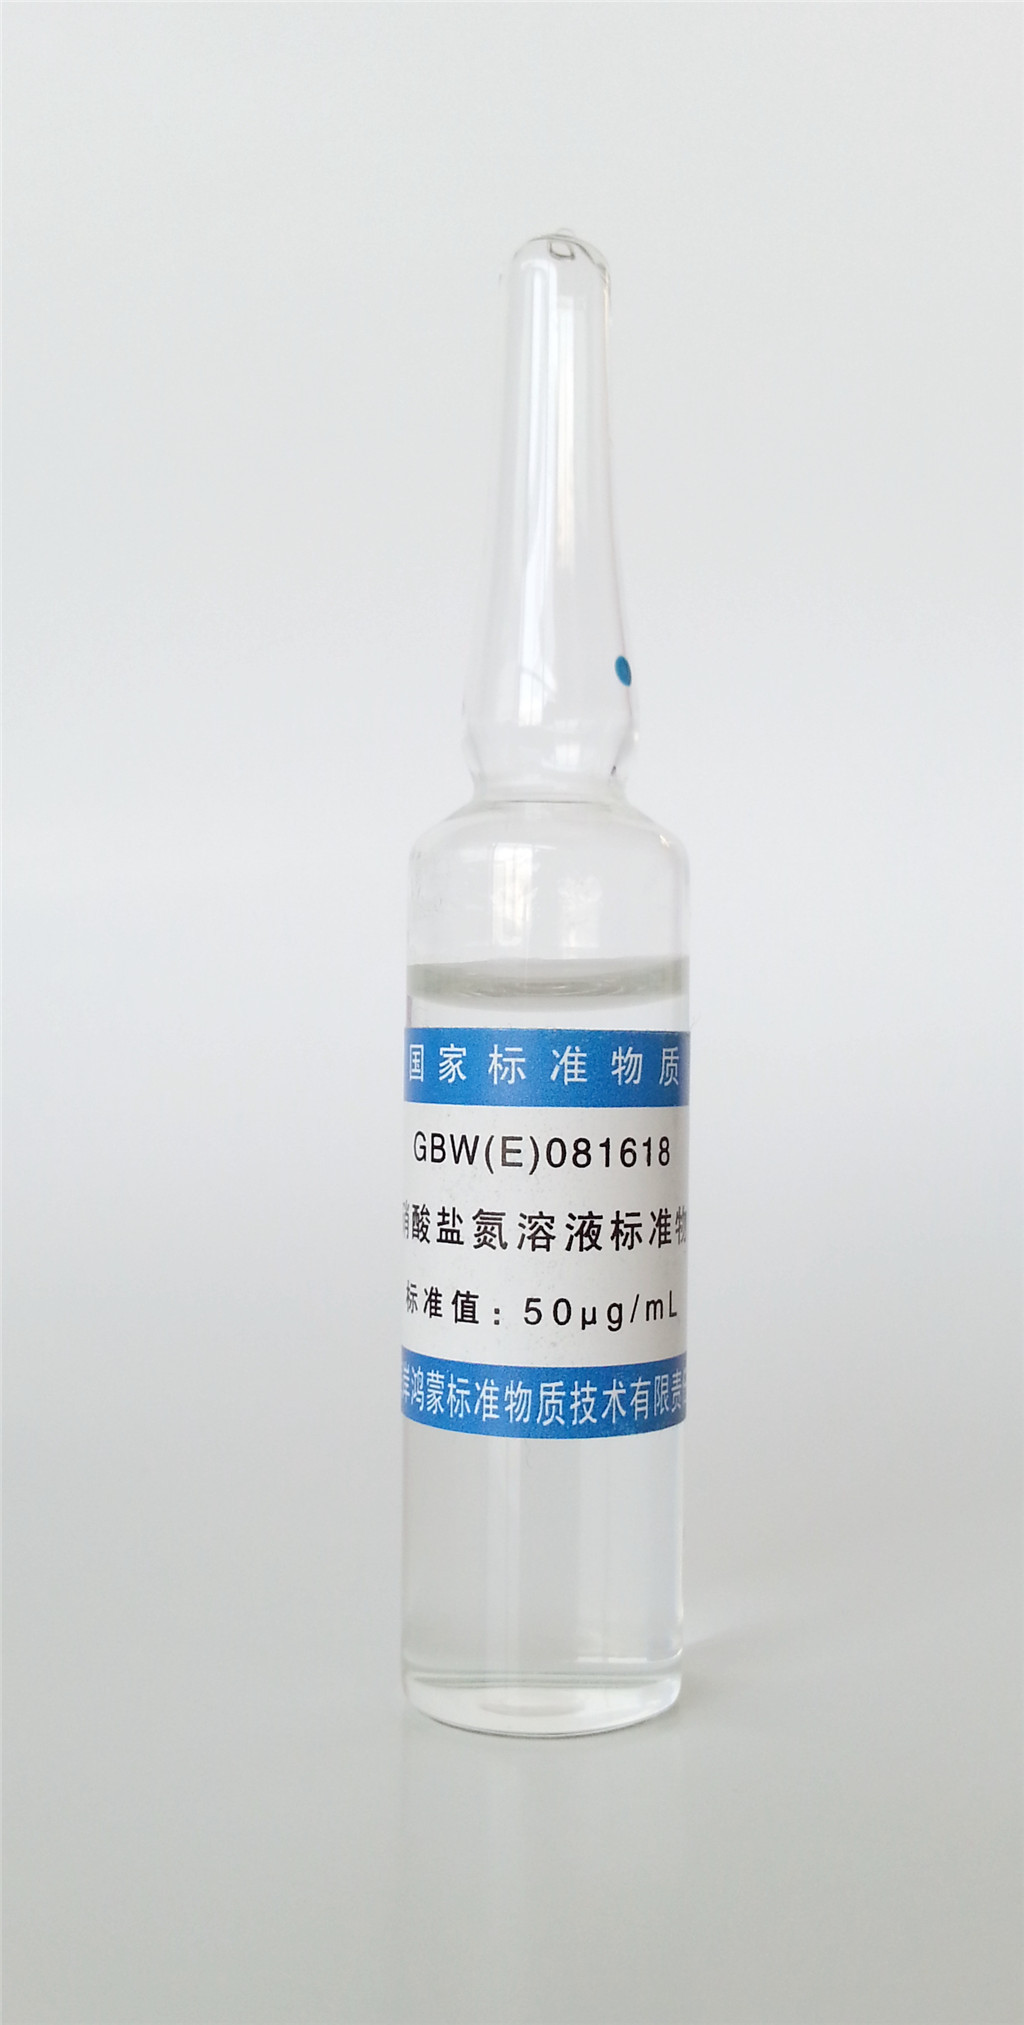 亚硝酸盐氮溶液标准物质gbw(e)081618